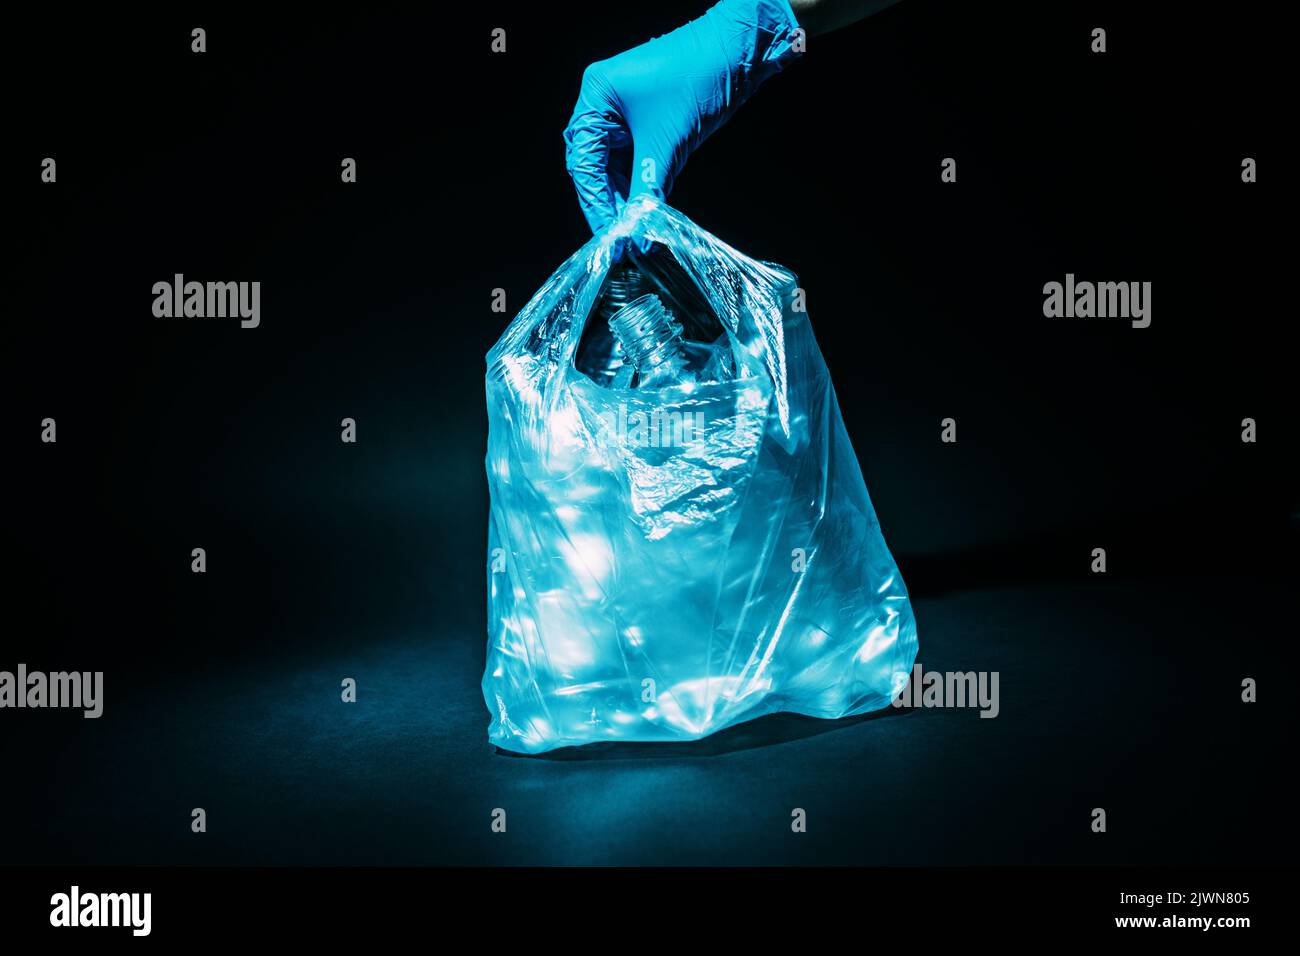 waste management plastic reuse hand bottles bag Stock Photo